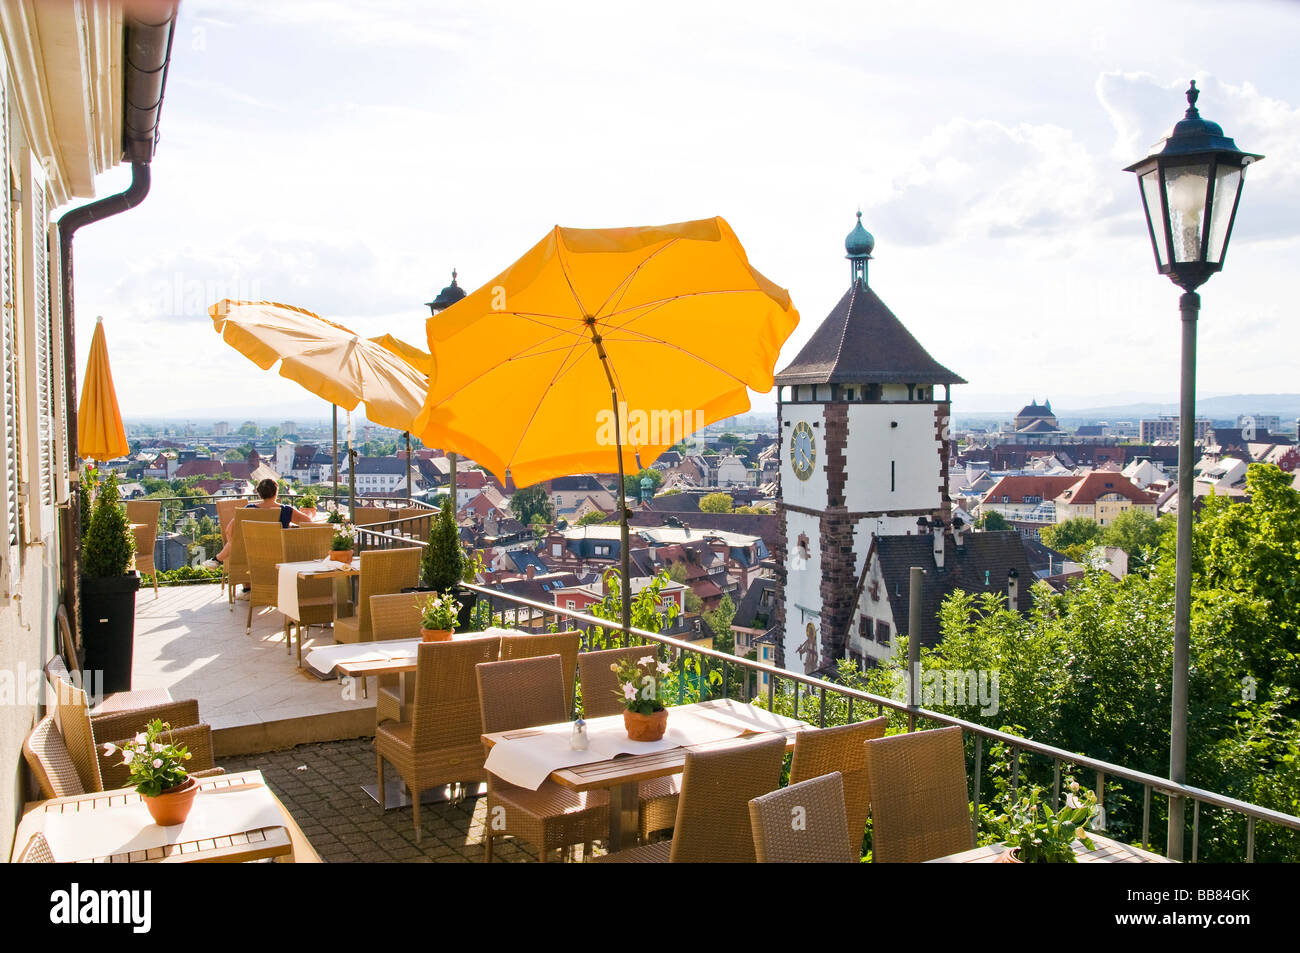 Restaurant avec parasol et Schwabentor tower, Freiburg im Breisgau, Bade-Wurtemberg,  Allemagne Photo Stock - Alamy